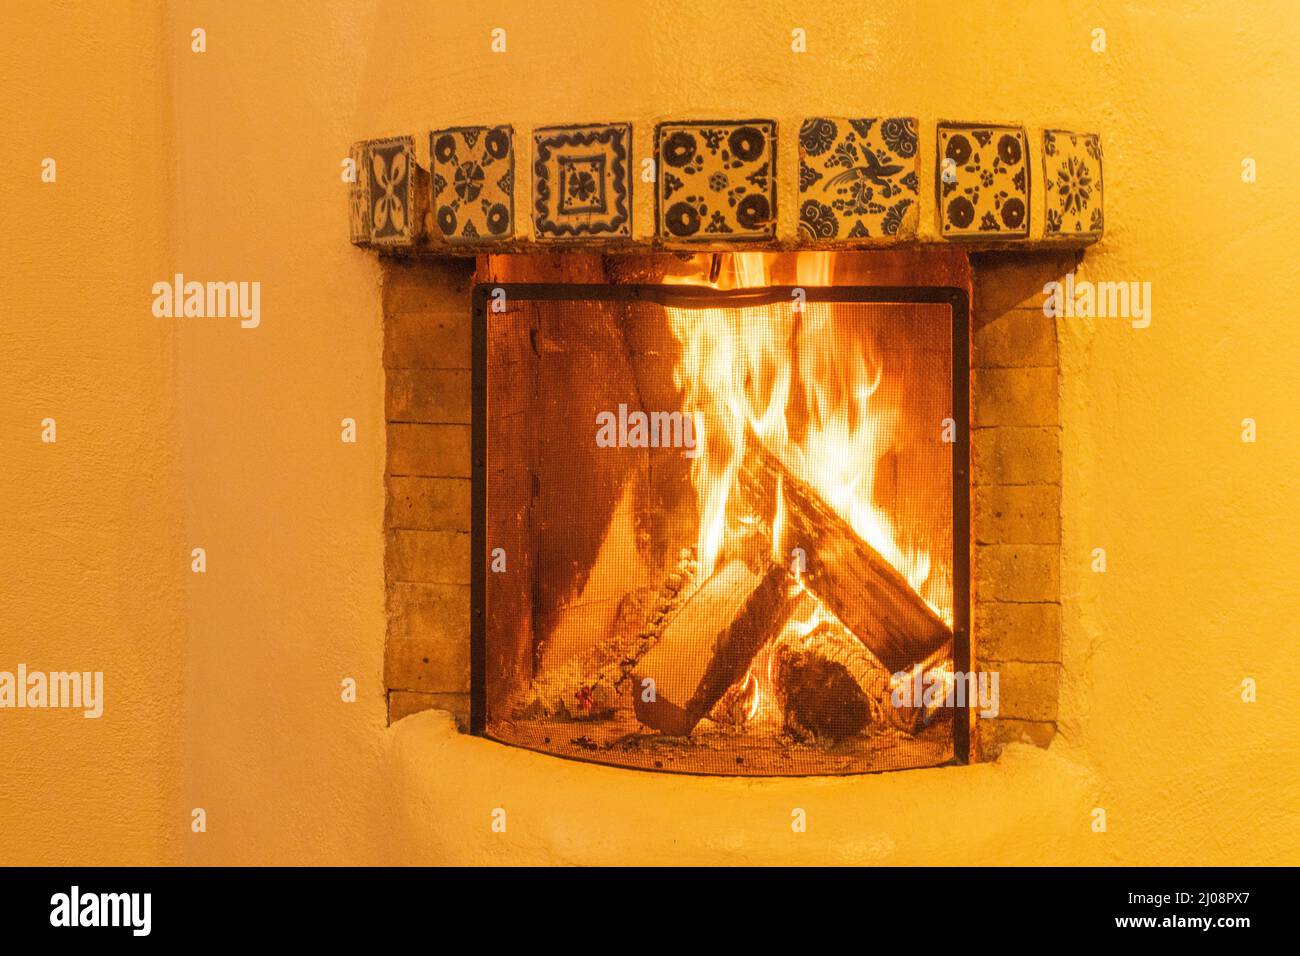 kiva stile camino bruciando tronchi comuni nelle case nel sud-ovest degli Stati Uniti con le pareti adobe irradiando calore e fornire calore accogliente Foto Stock